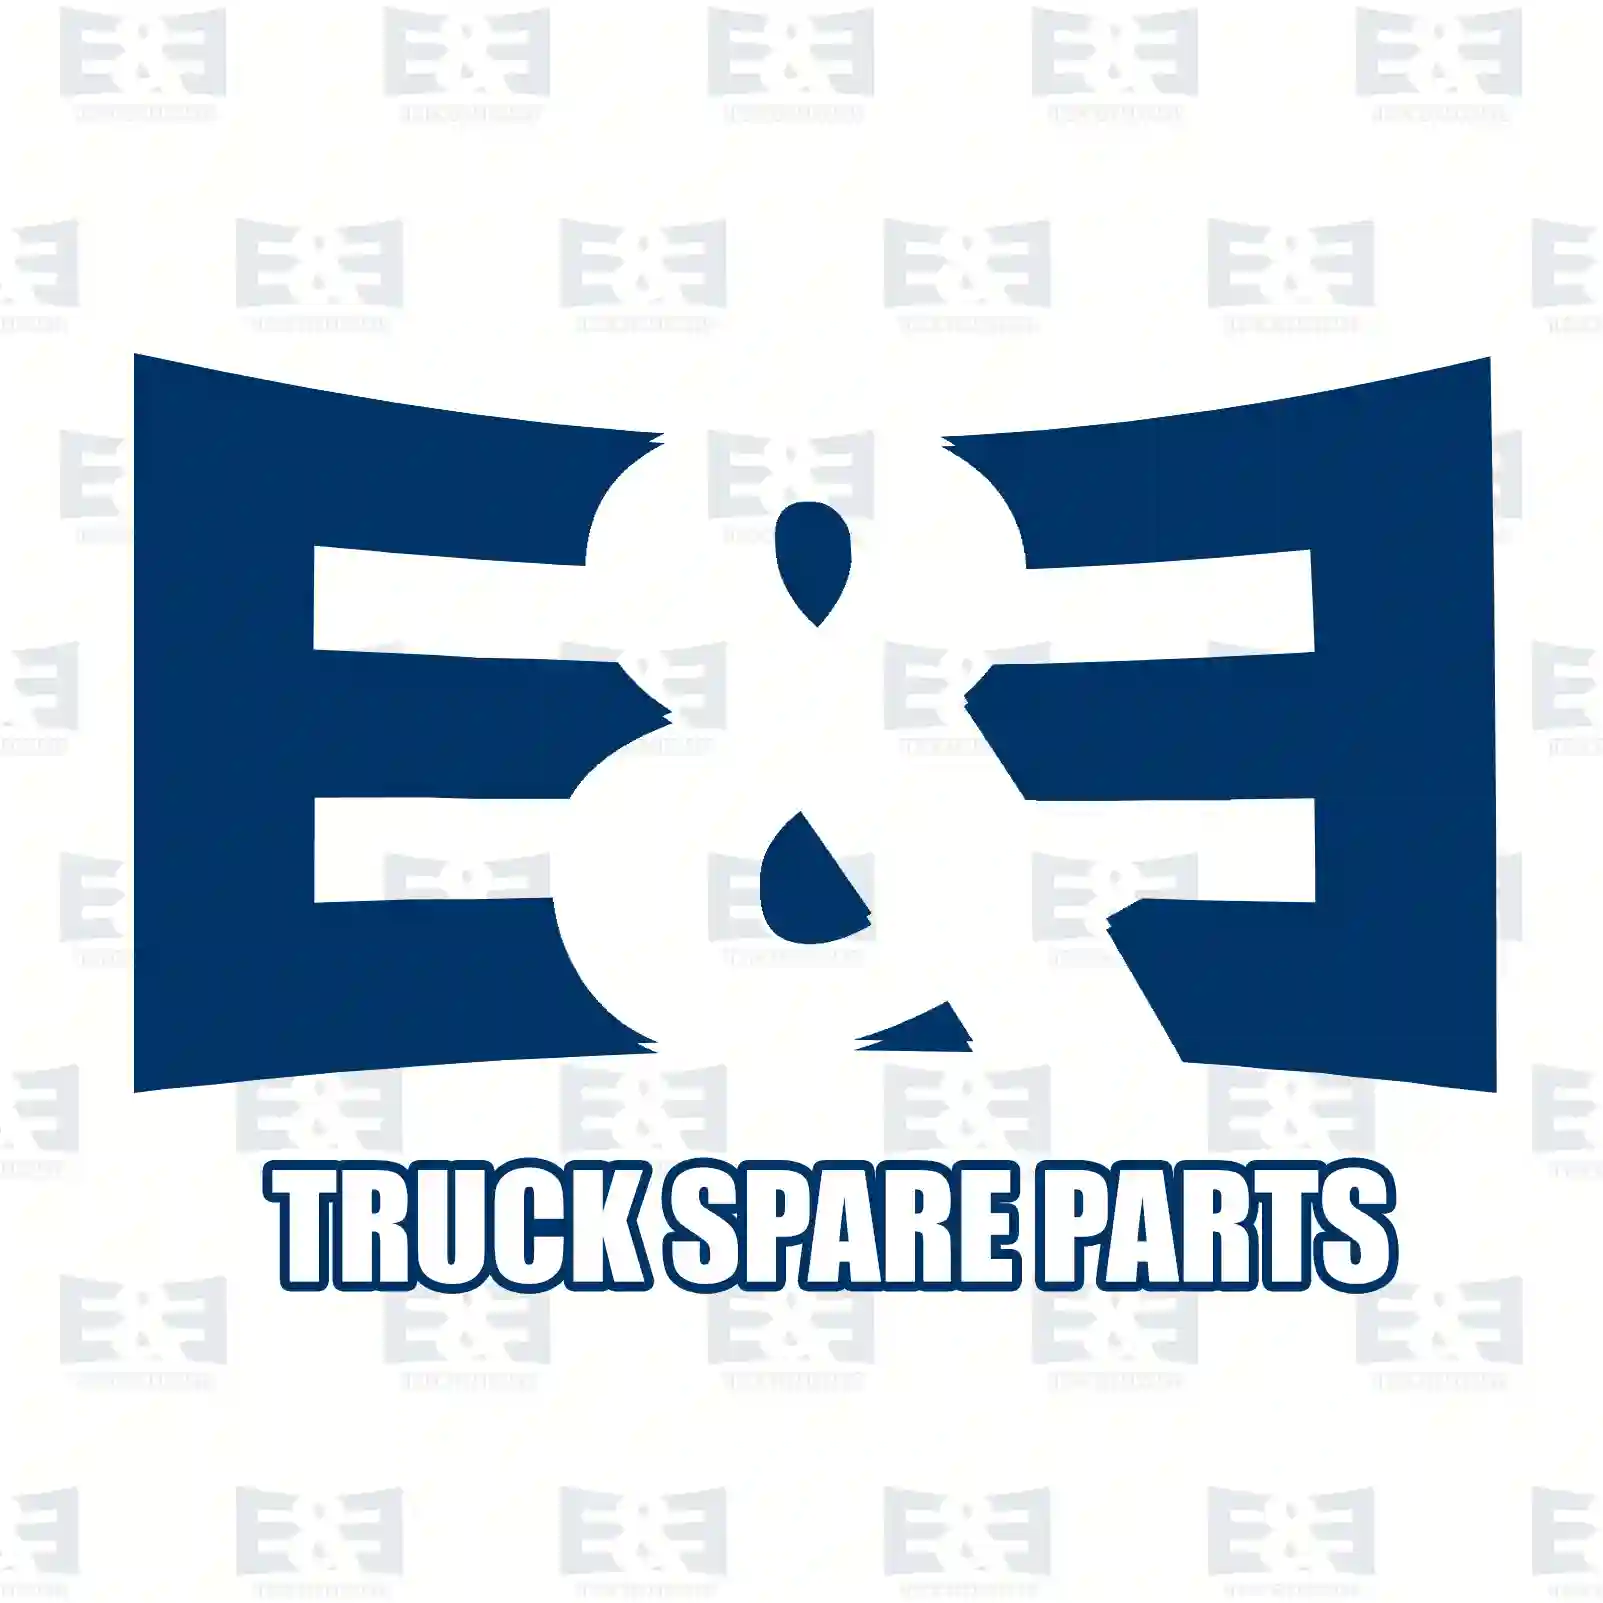 Pull rod, complete, 2E2209548, 9,00E+11 ||  2E2209548 E&E Truck Spare Parts | Truck Spare Parts, Auotomotive Spare Parts Pull rod, complete, 2E2209548, 9,00E+11 ||  2E2209548 E&E Truck Spare Parts | Truck Spare Parts, Auotomotive Spare Parts